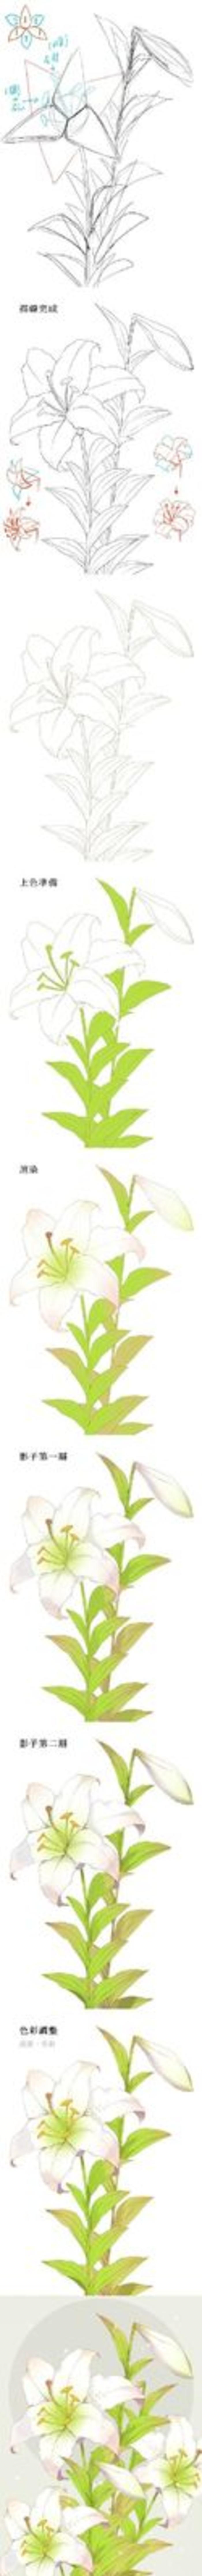 动漫绘师moiy的花卉教程合集，教你画玫瑰、百合、山茶花等9种不同的花卉插画图片壁纸